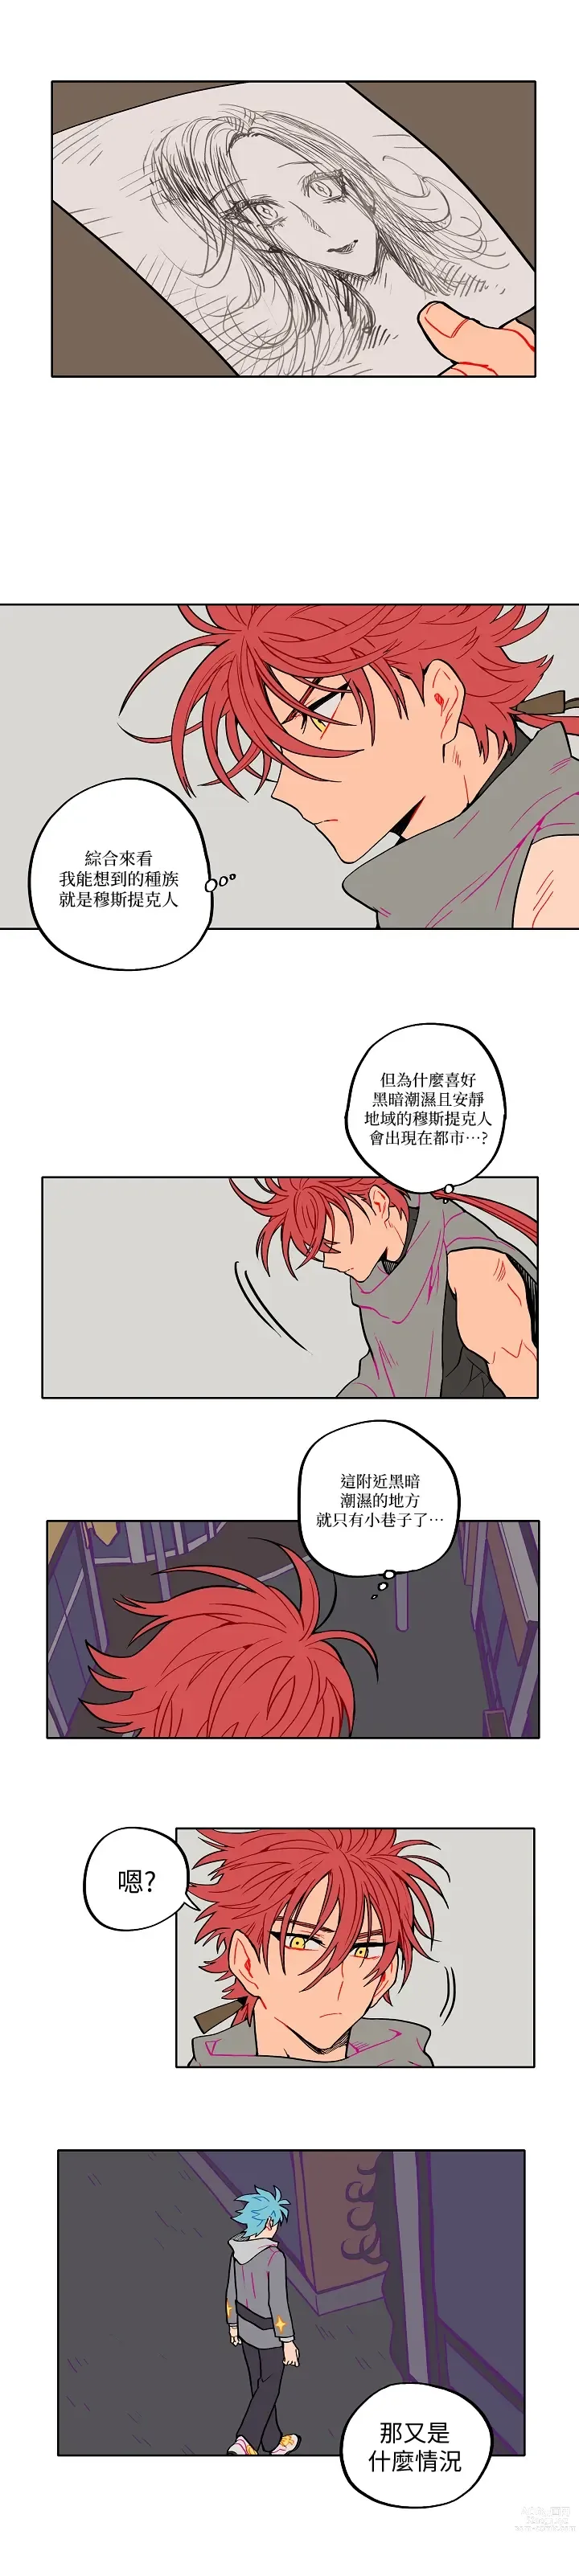 Page 26 of manga 宙与剑 02-03